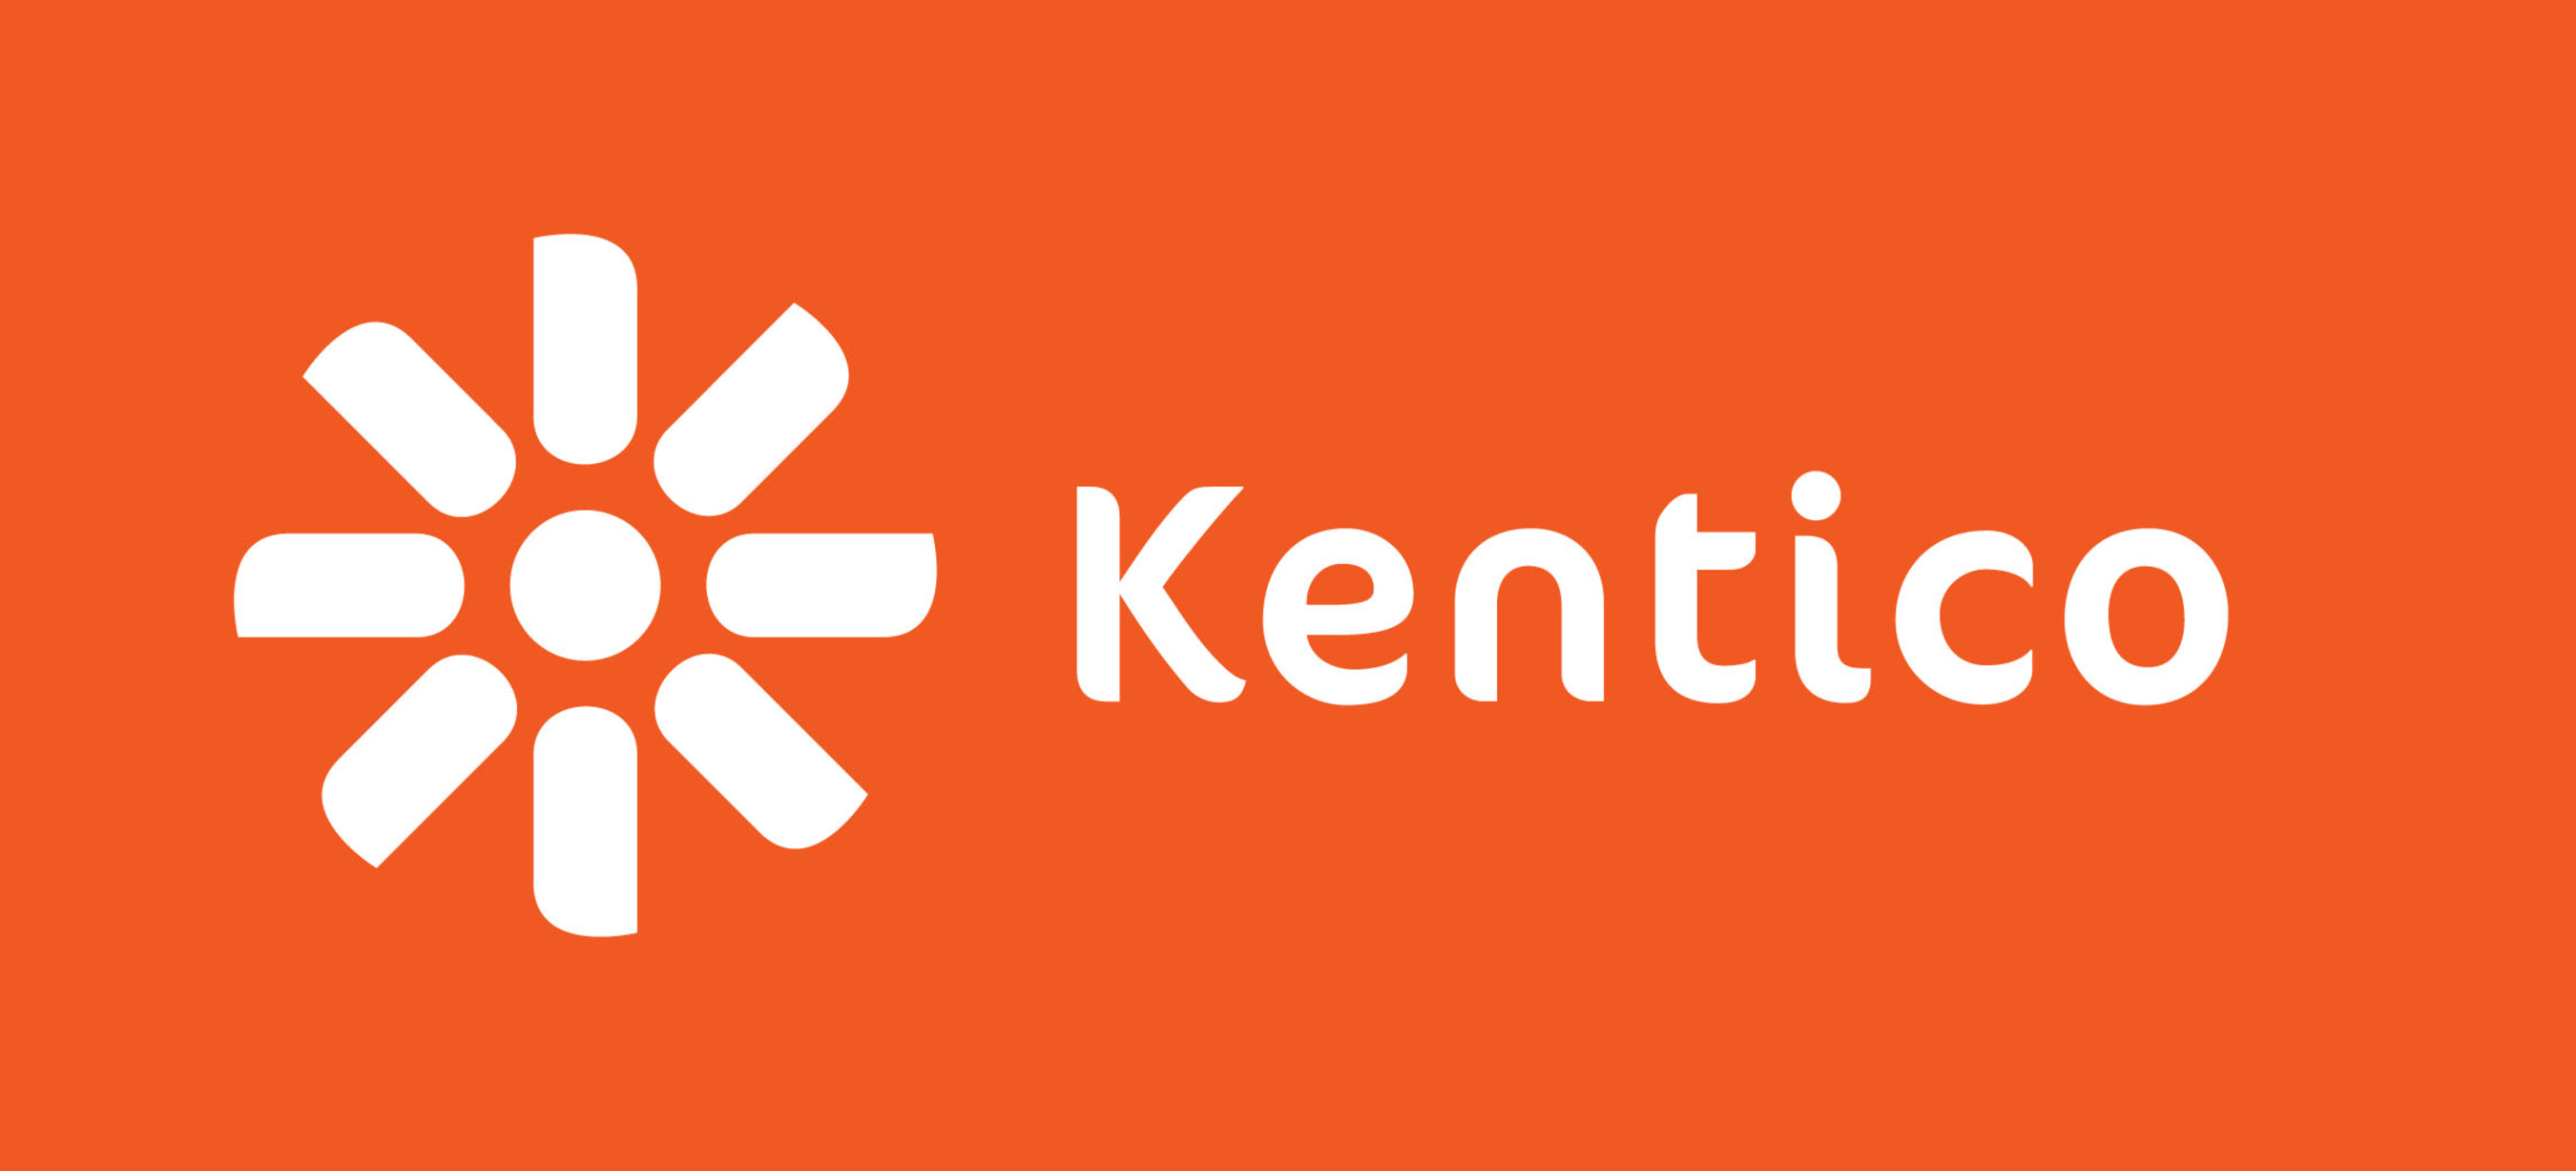 Kentico Software.